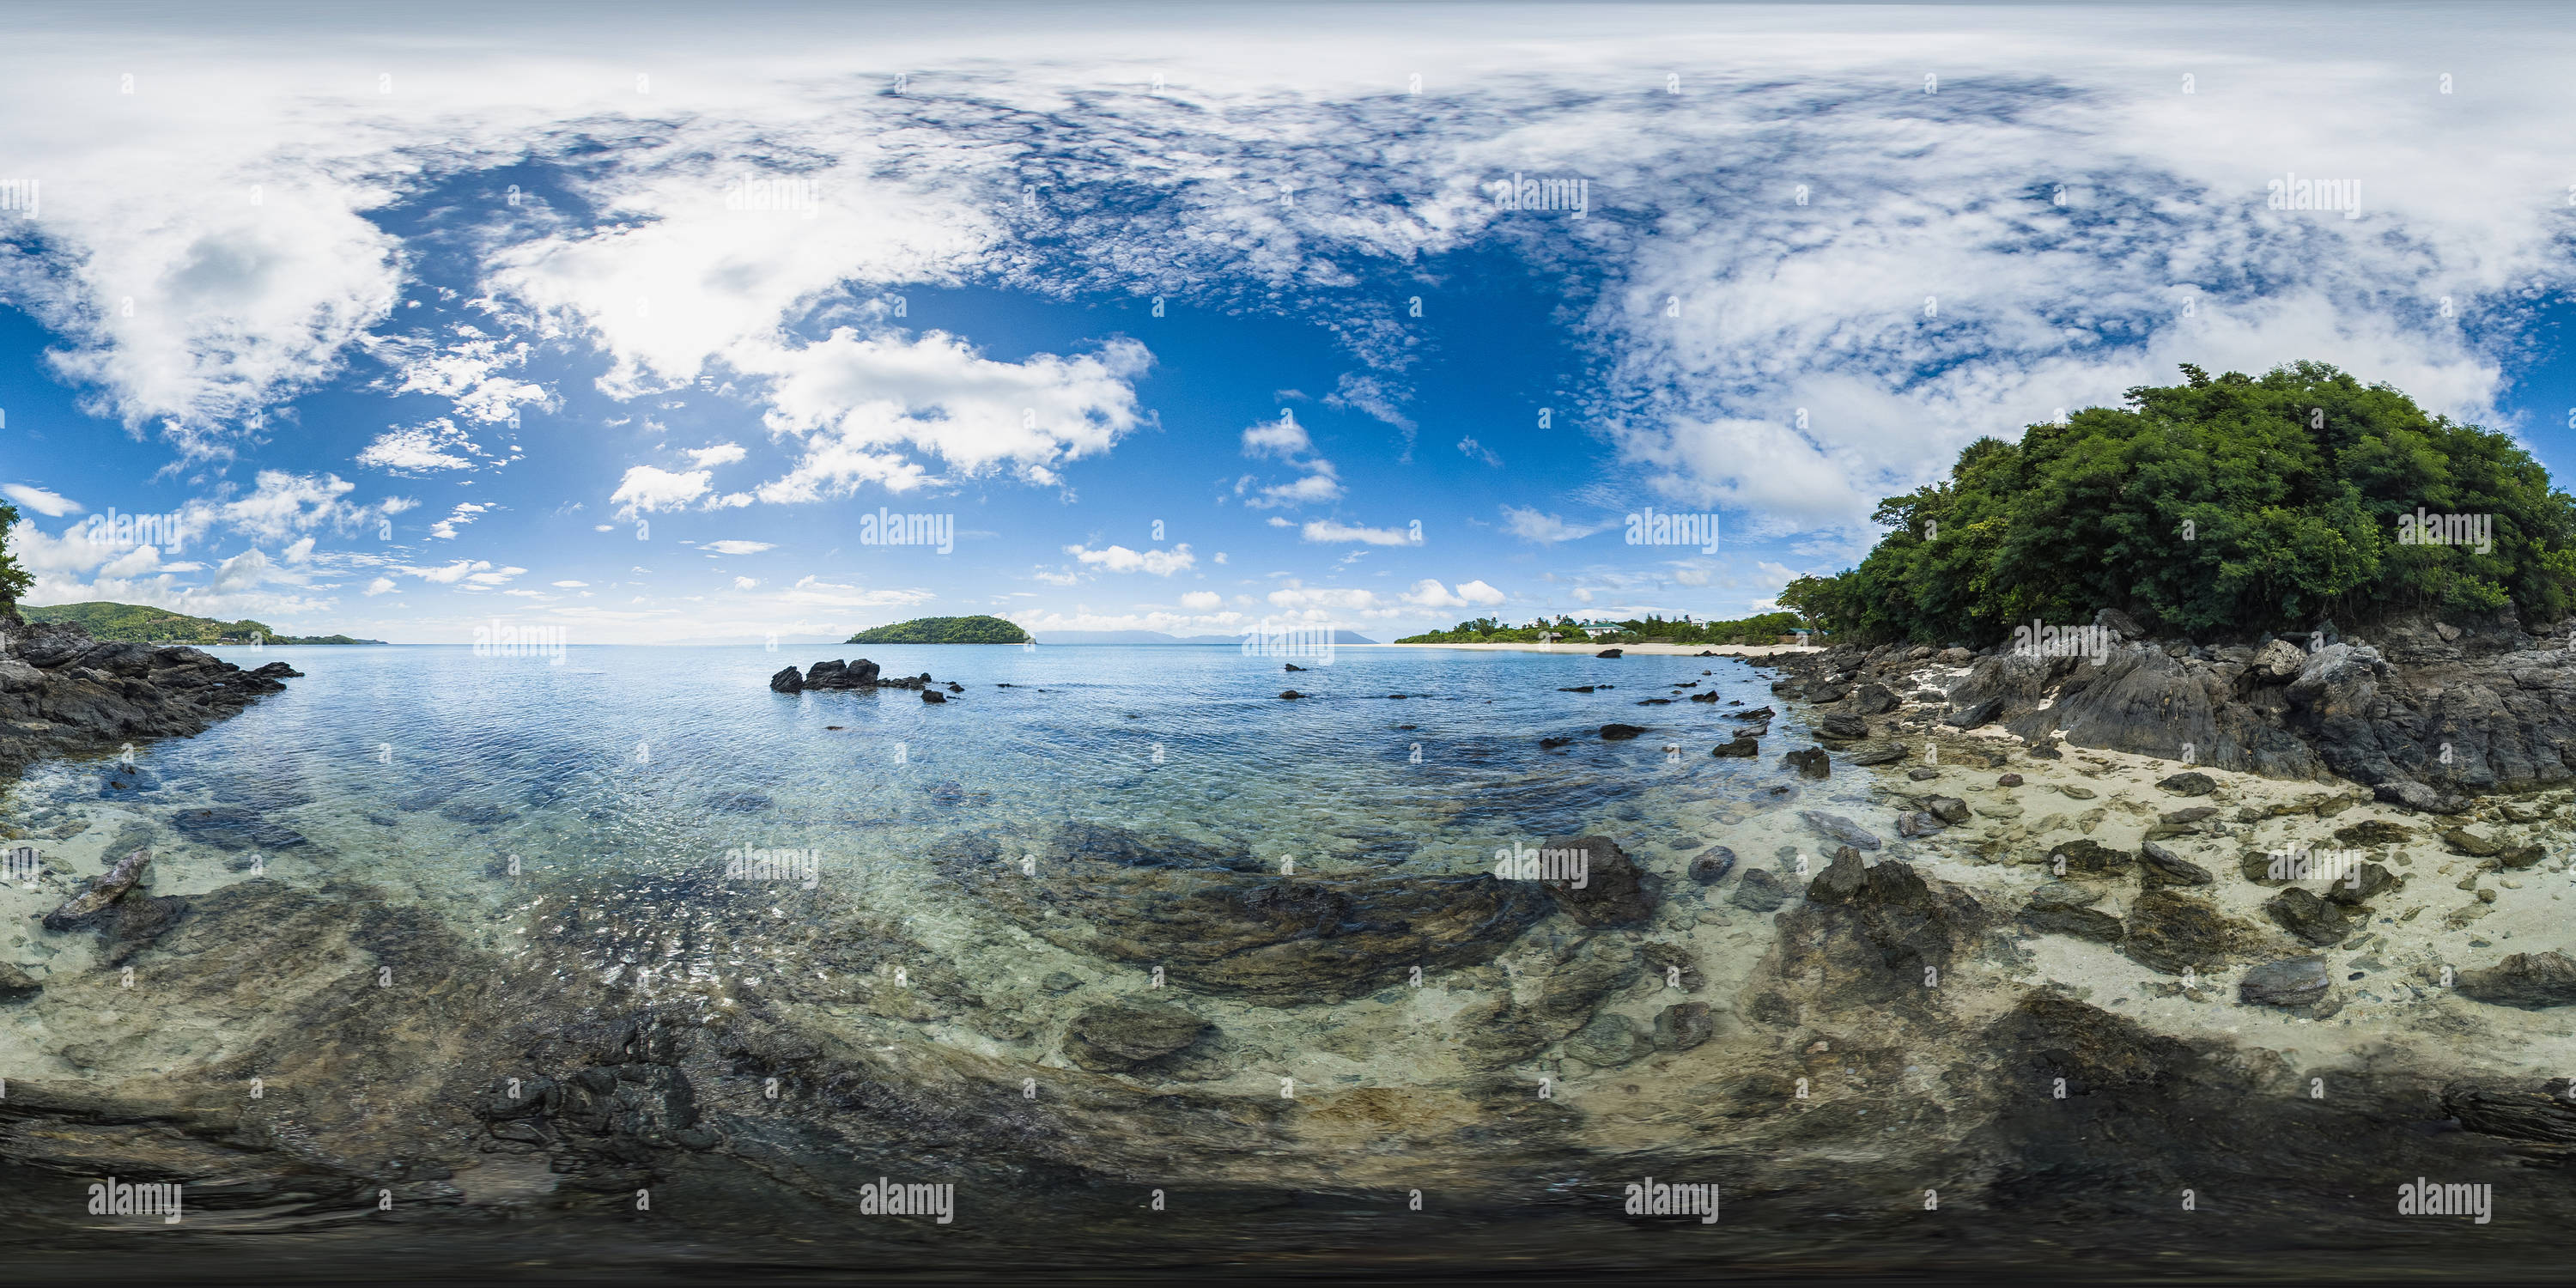 360 degree panoramic view of Beach in Romblon Island. Philippines.